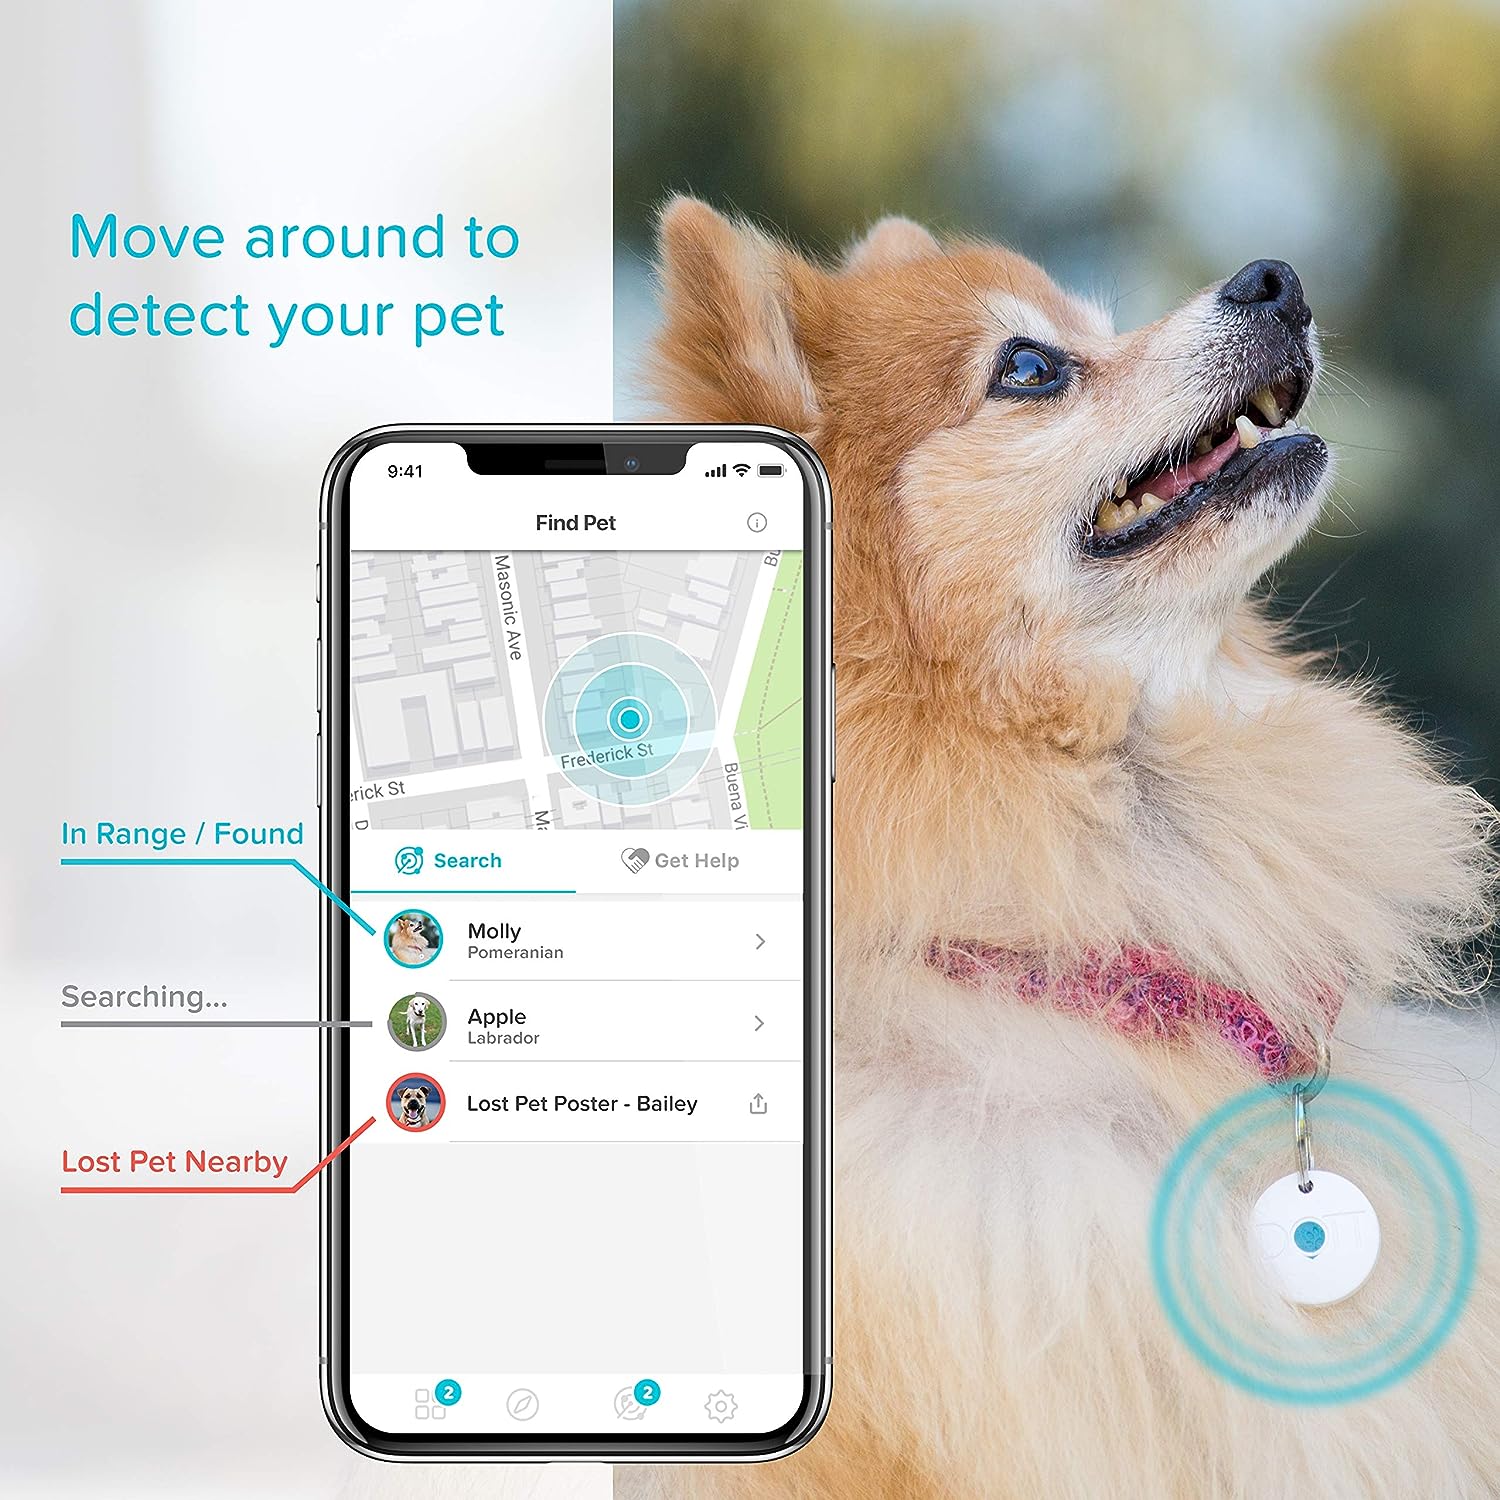 DOTT The Smart Dog Tag cho phép bạn theo dõi vị trí của thú cưng khi nằm trong phạm vi được chỉ định